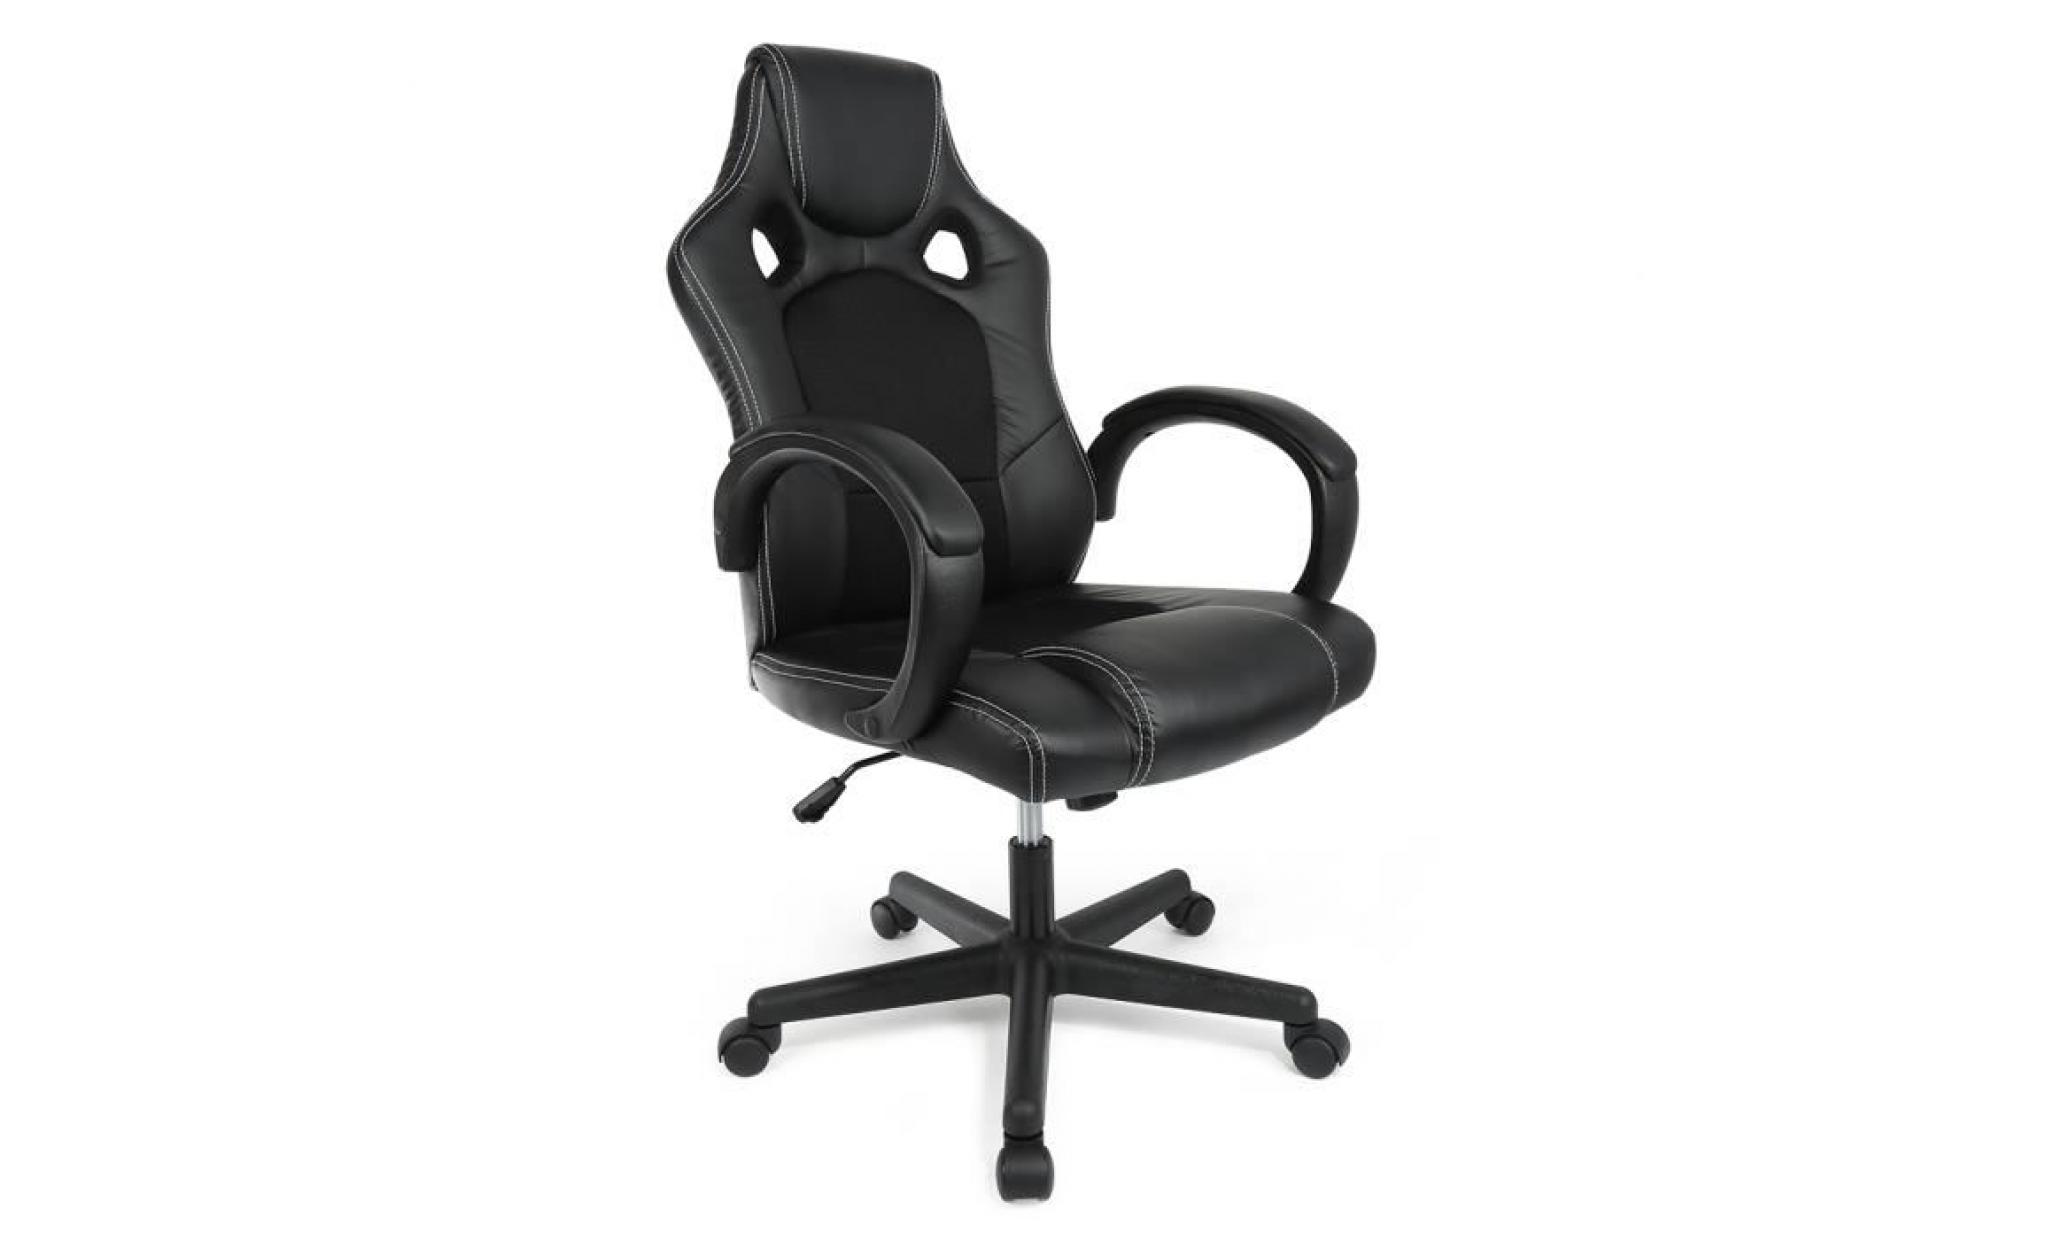 ouistore chaise gamer design baquet   simili et tissu noir   style contemporain   l 50 x p 42.5 cm pas cher